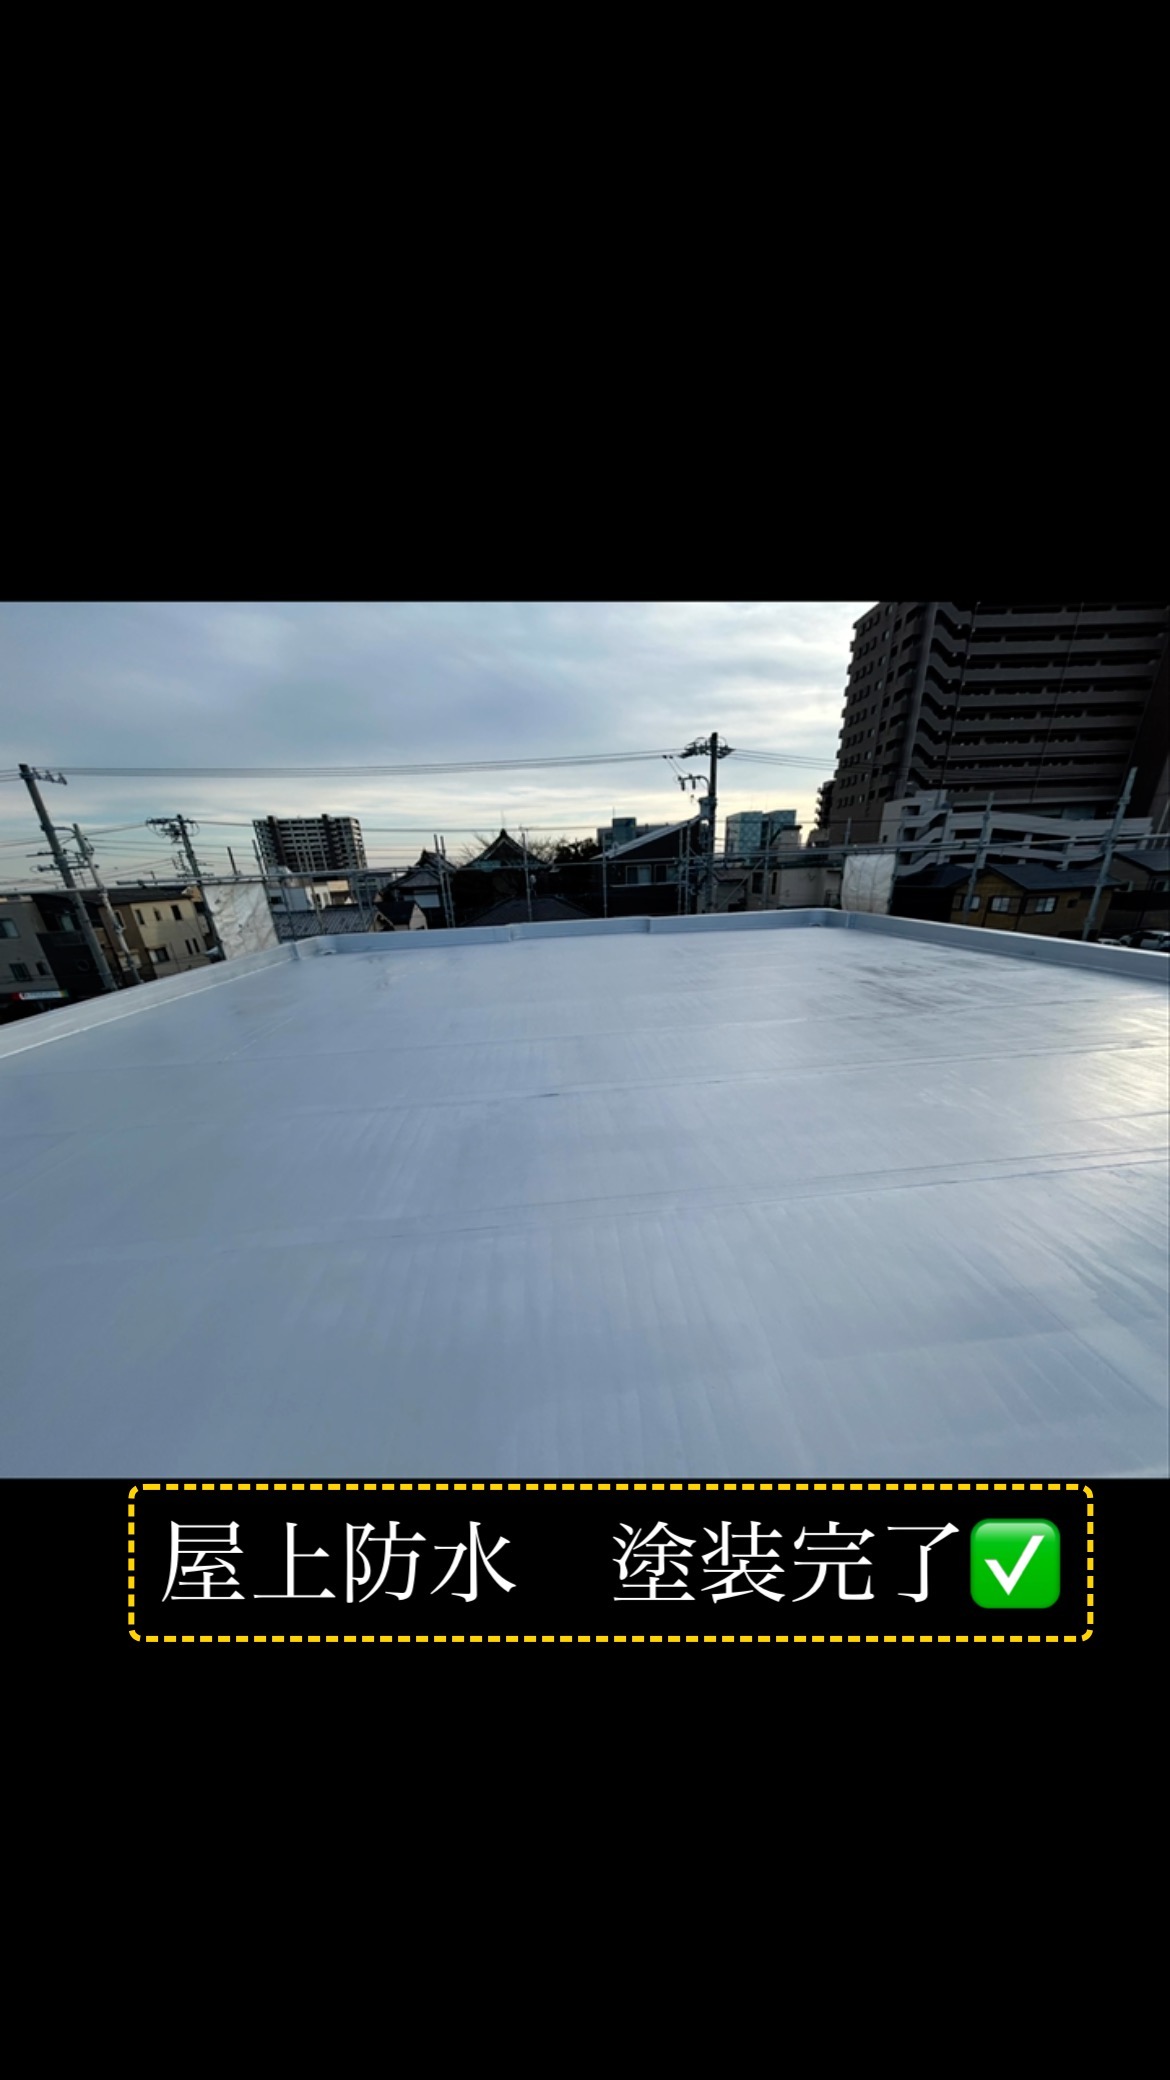 今日の塗装工事

磐田市にあるアパートの
屋上防水塗装を行いました。

シートの継ぎ目の
剥がれを補修した後に
水性アトレーヌにて
2回塗装をしました。